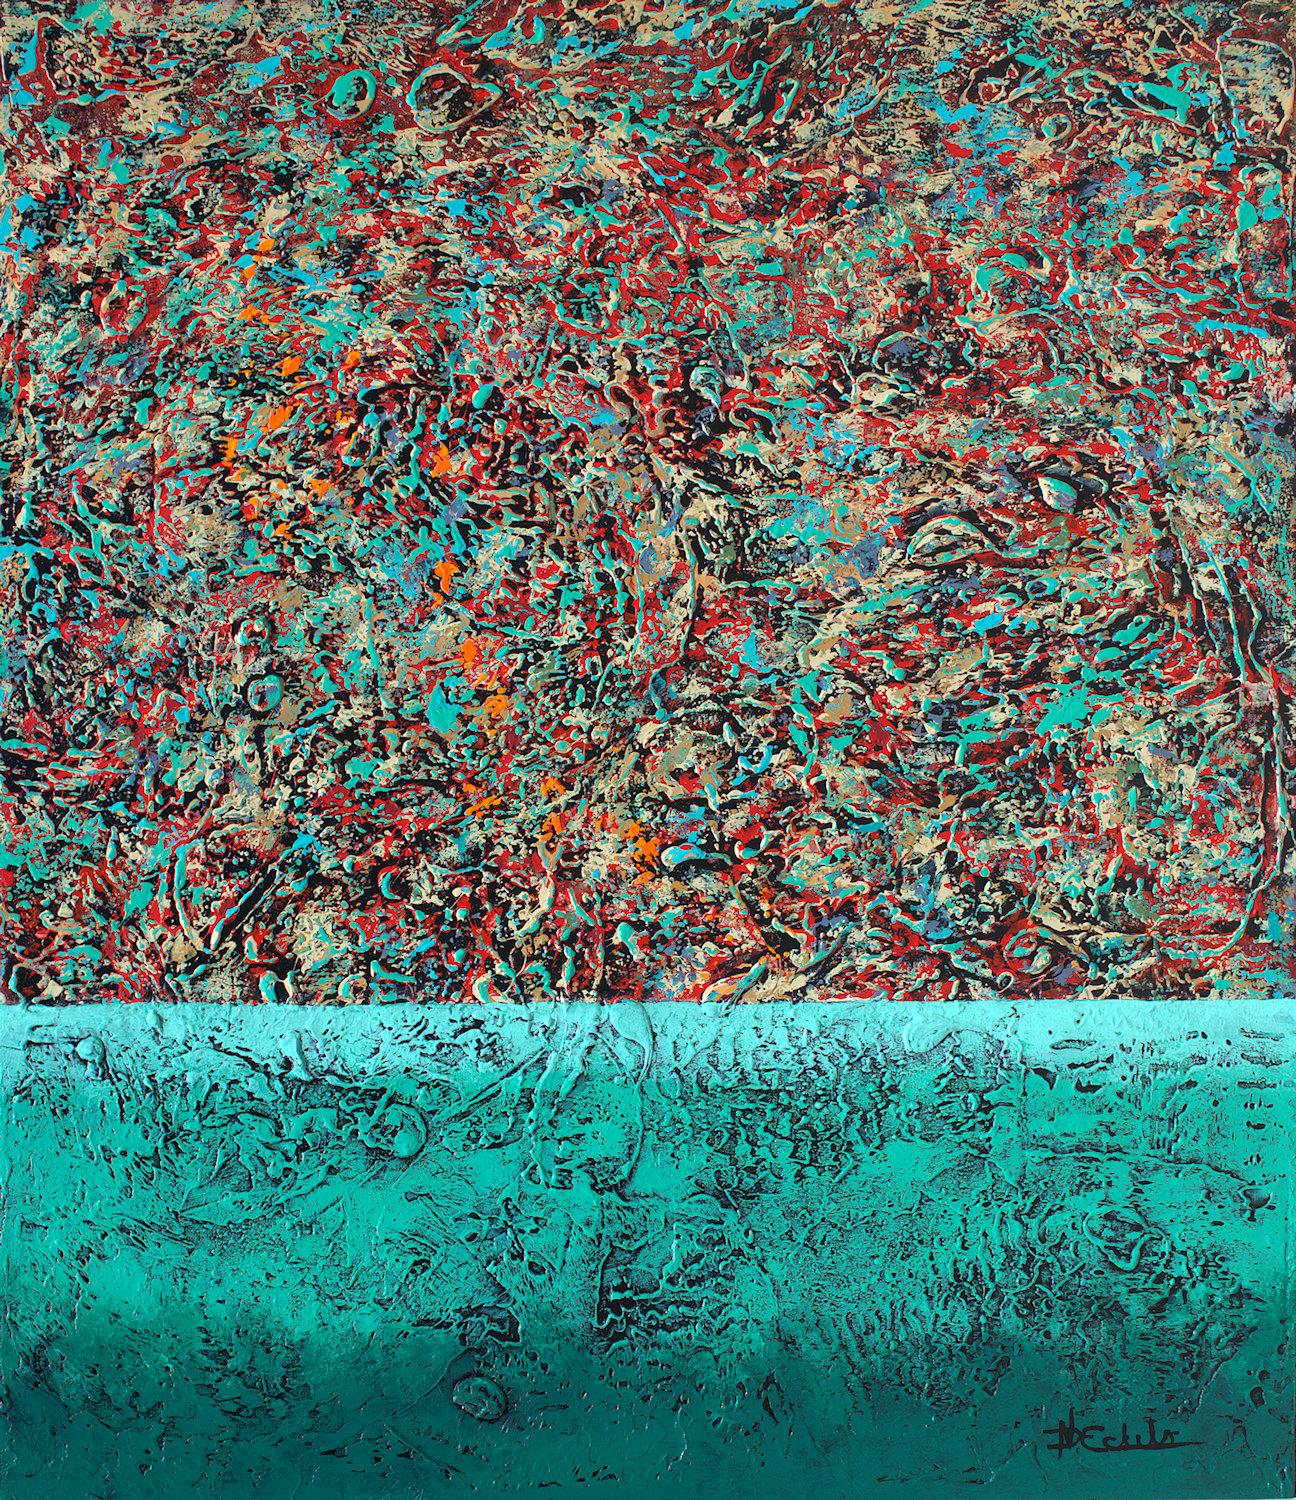 Nancy Eckels Abstract Painting – ""Textur Liebe" Mixed Media abstrakt mit strukturierten Grün-, Rot- und Türkistönen